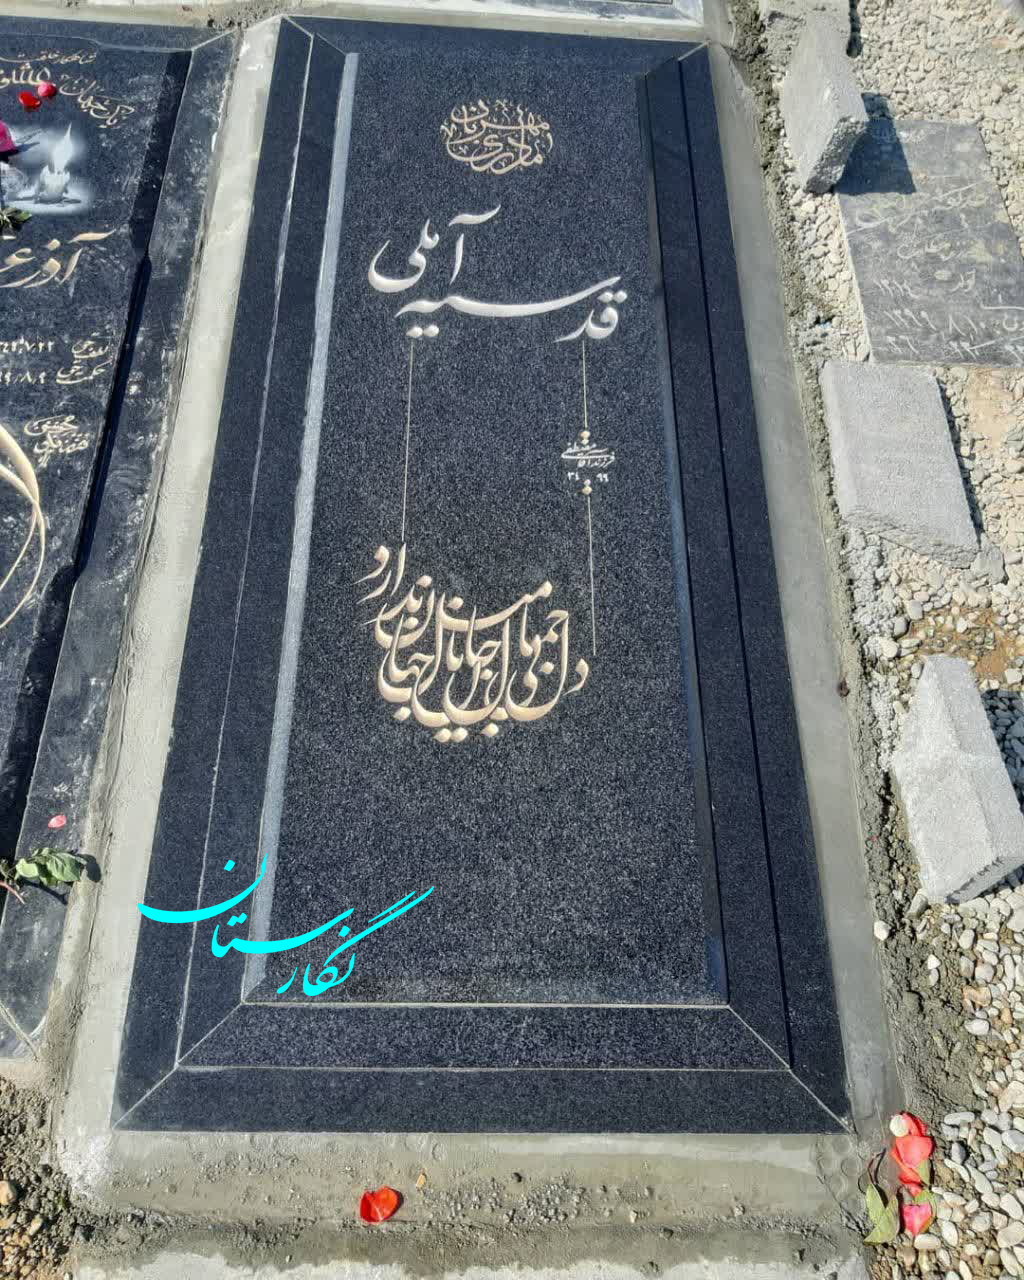  سنگ قبر گرانیت نطنز اصفهان شیک کد 141| فروشگاه سنگ مزار نگارستان 